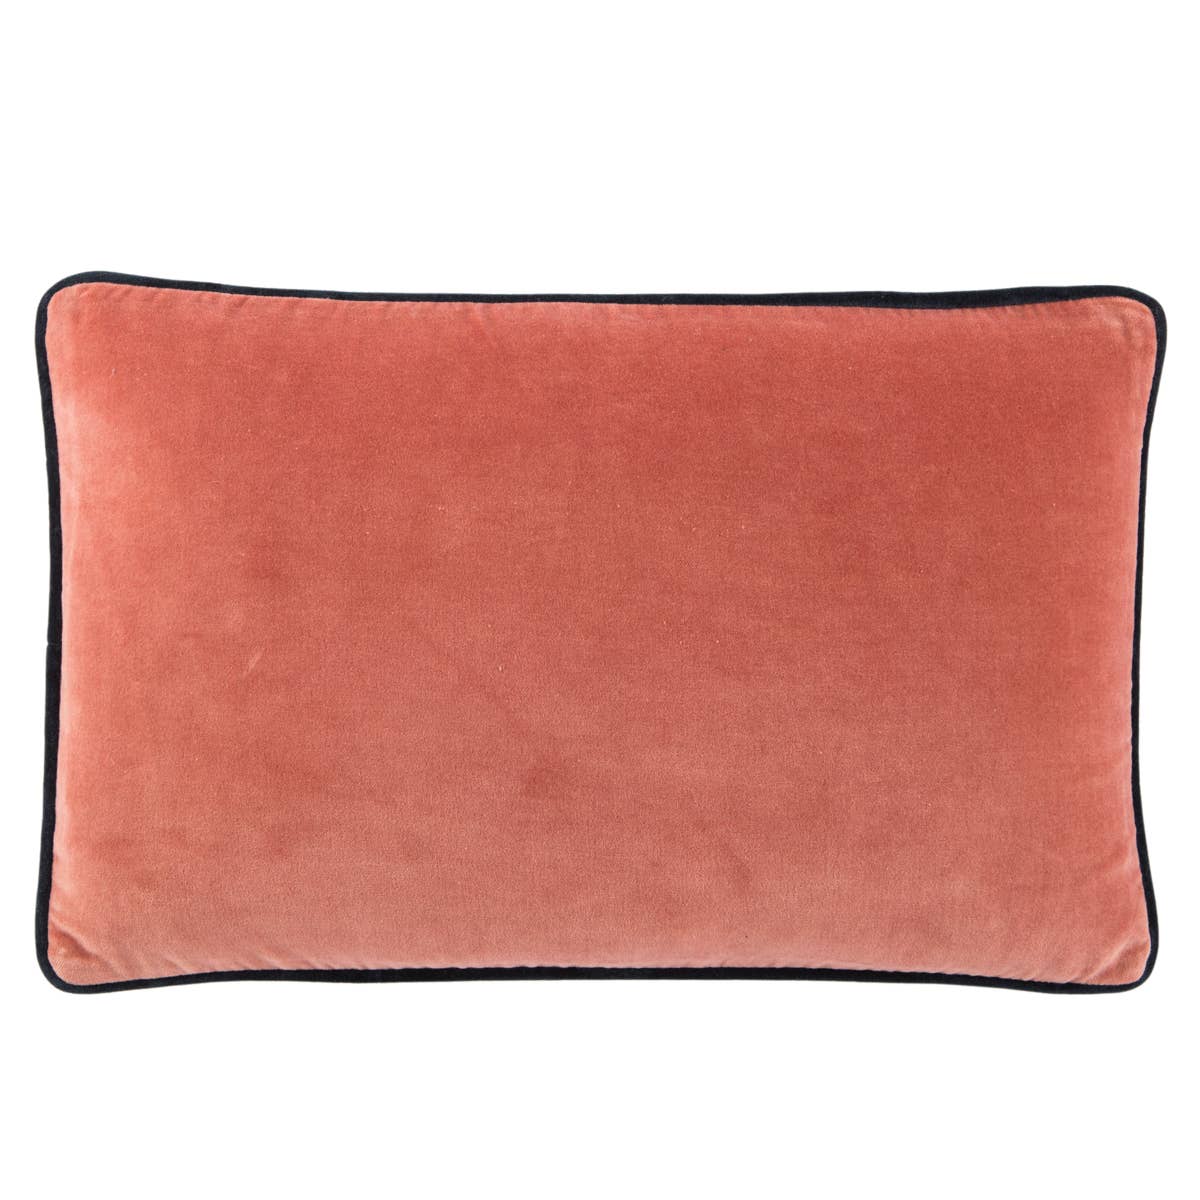 Emerson Lyla 13 x 21 Lumbar Indoor Pillow by Jaipur Living | Luxury Pillows | Willow & Albert Home